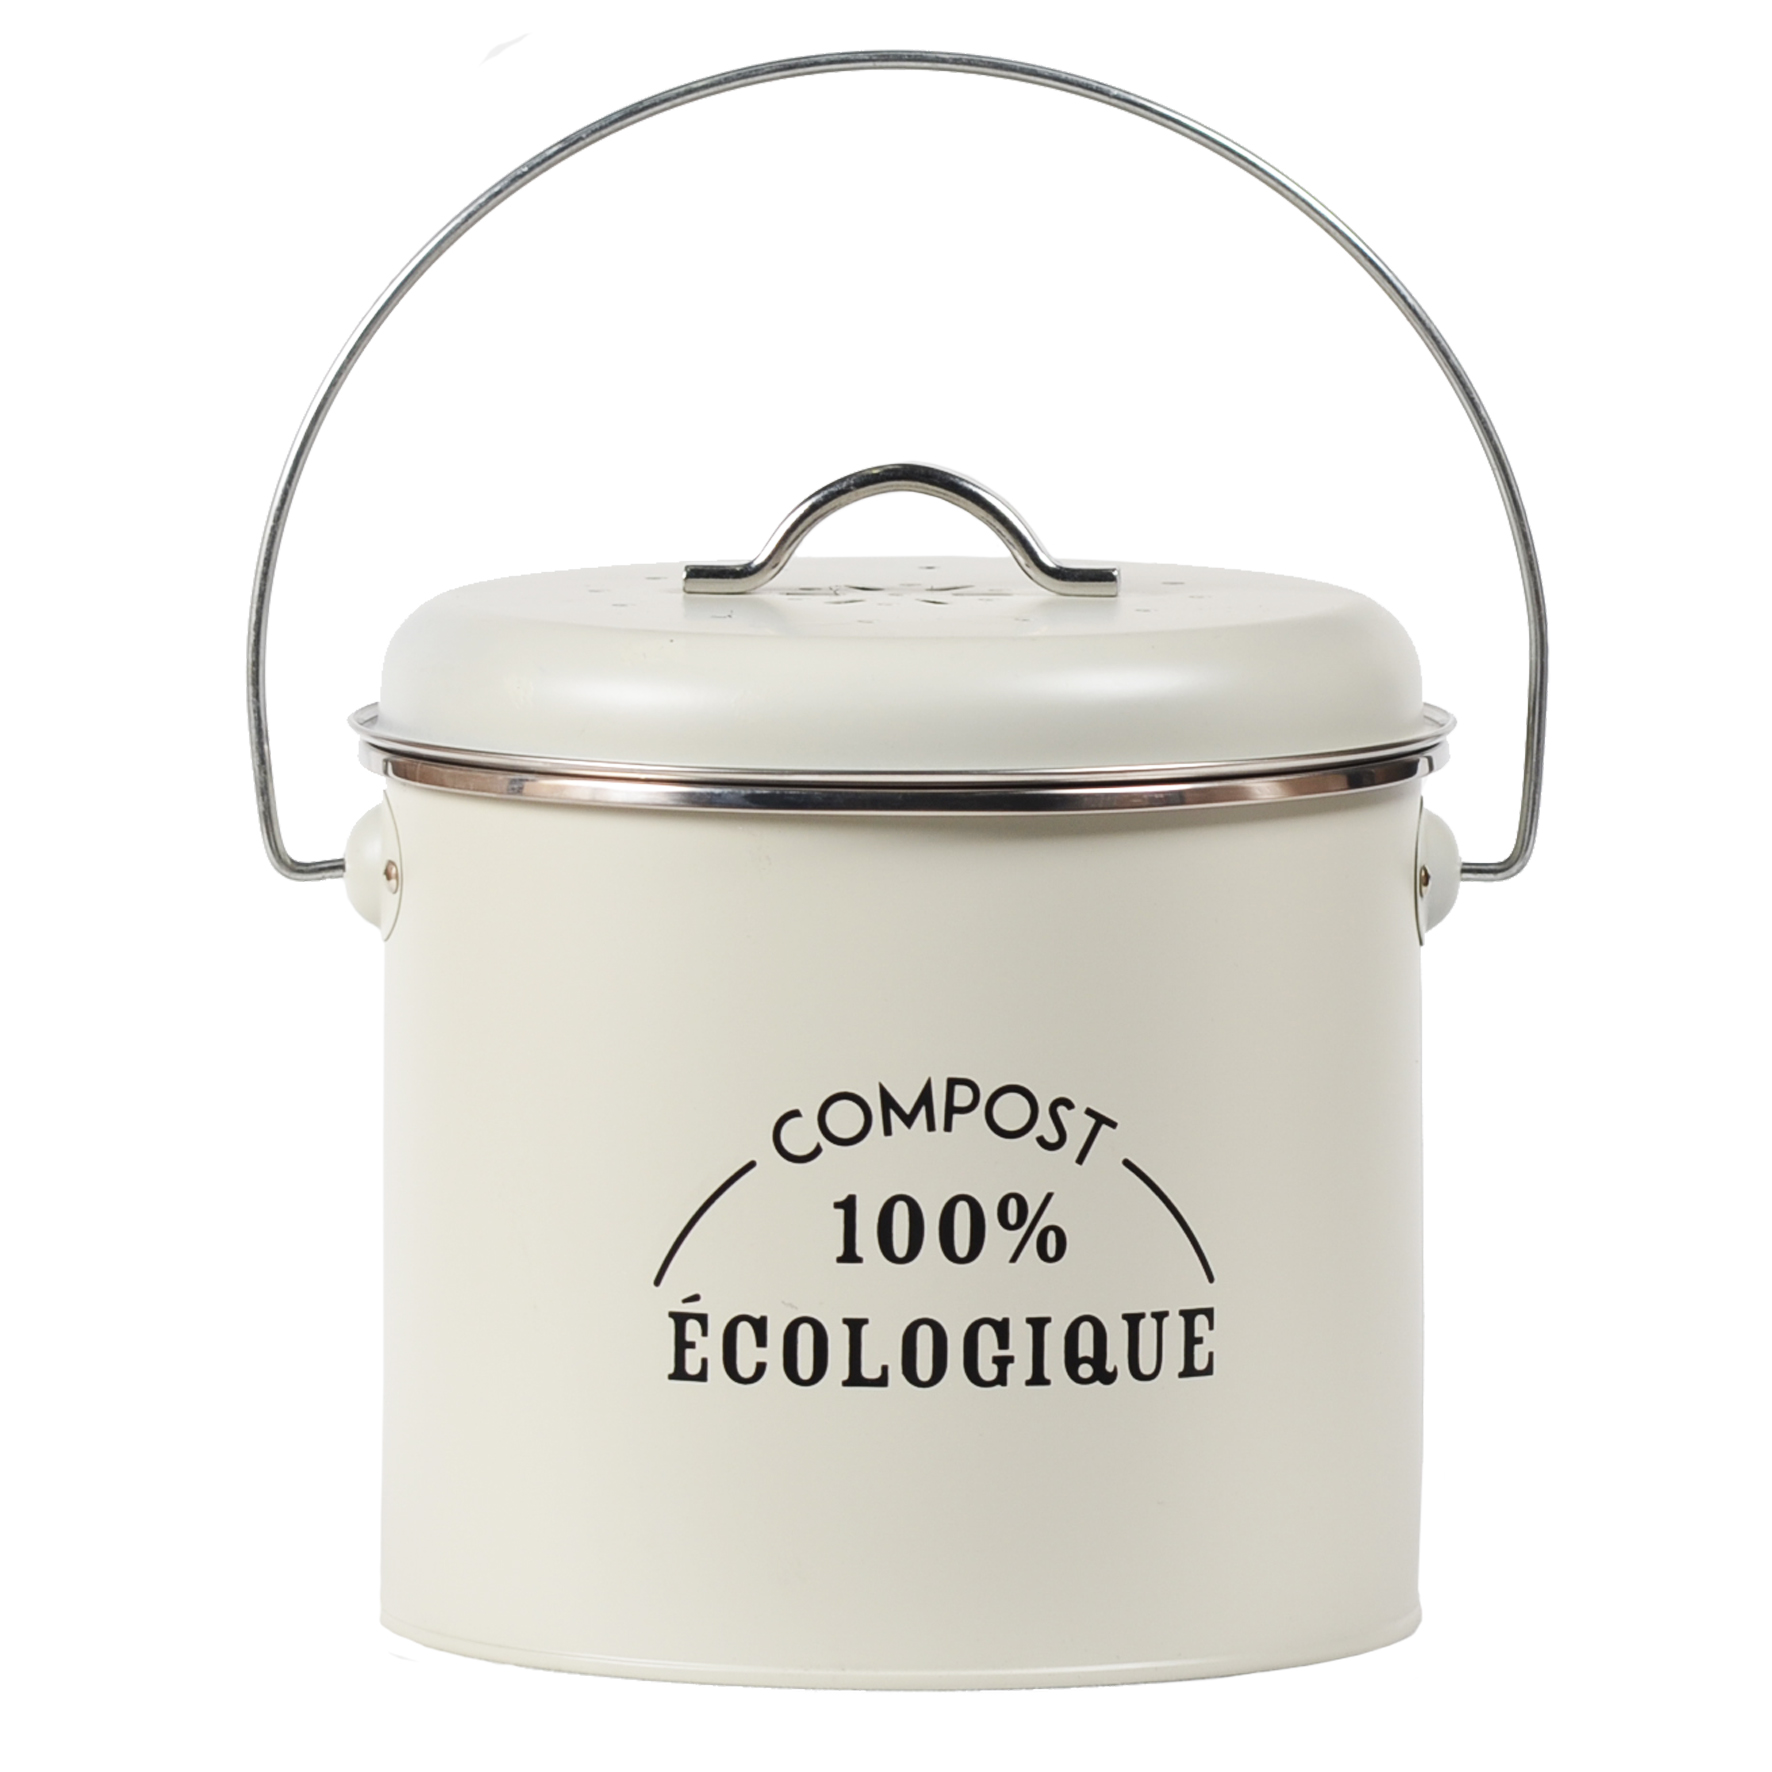 Composteur Cuisine,9 Litre Poubelle à Compost Cuisine avec